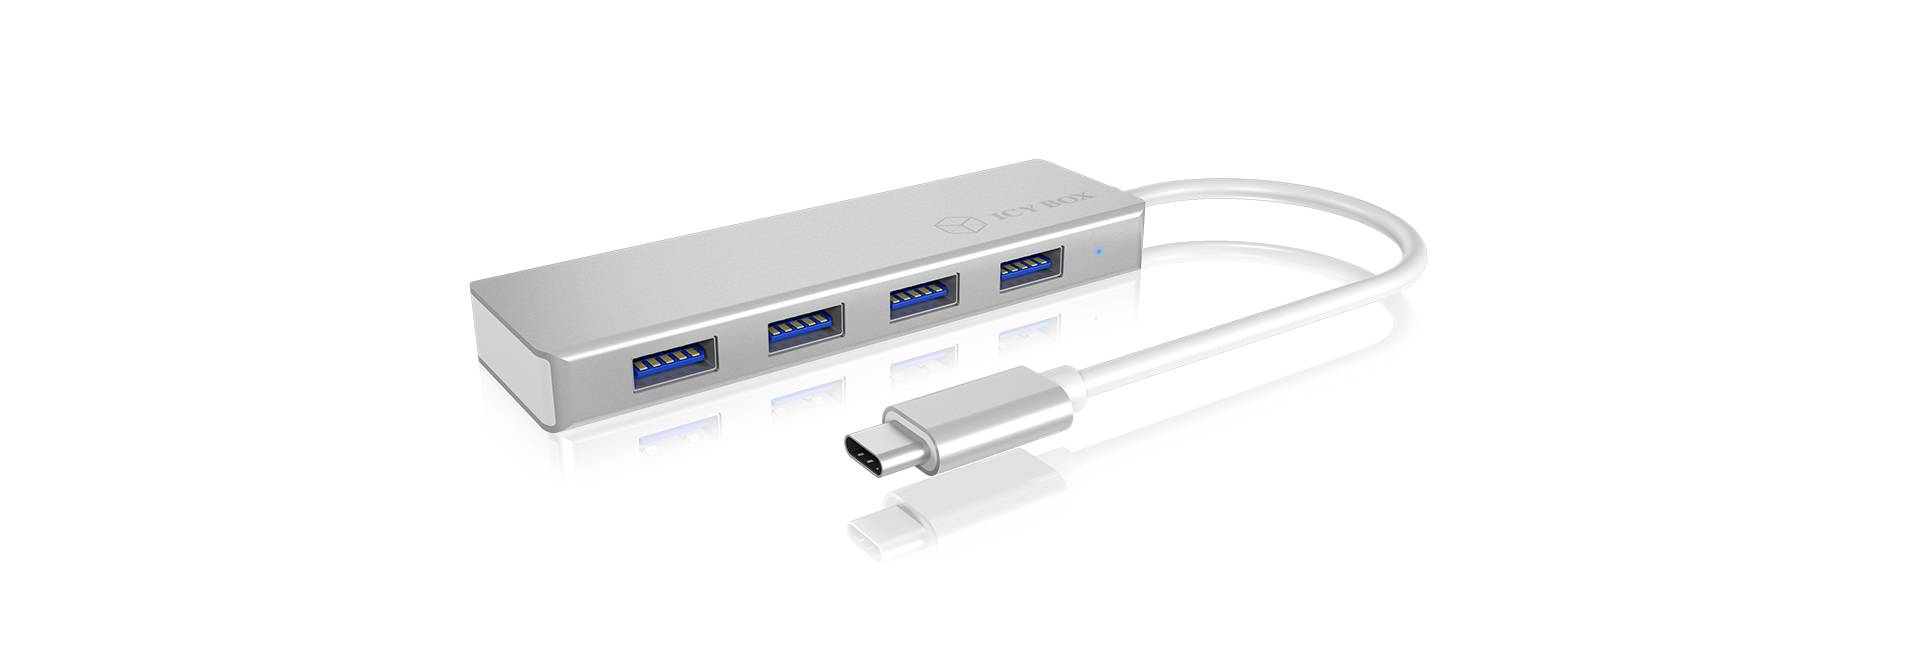 RAIDSONIC Hub 4-Port IcyBox USB 3.0 IB-HUB1425-C3 Hub retail